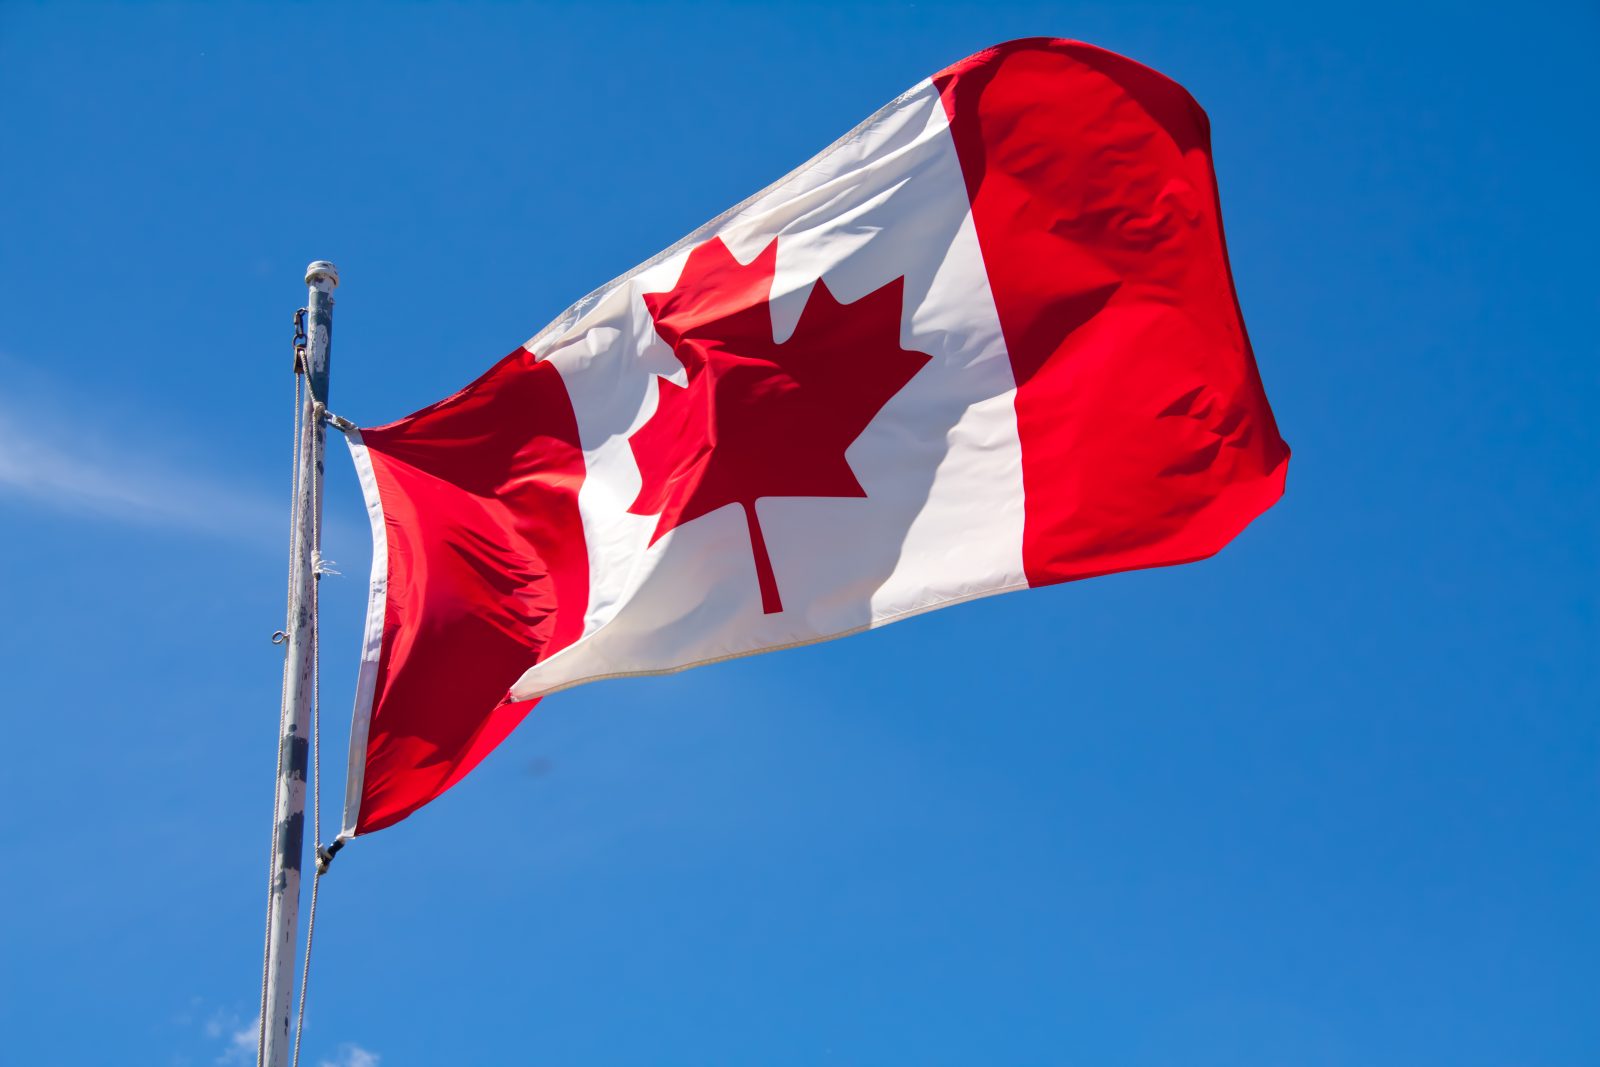 Le drapeau canadien actuel, l'Unifolié, célèbre ses 50 ans